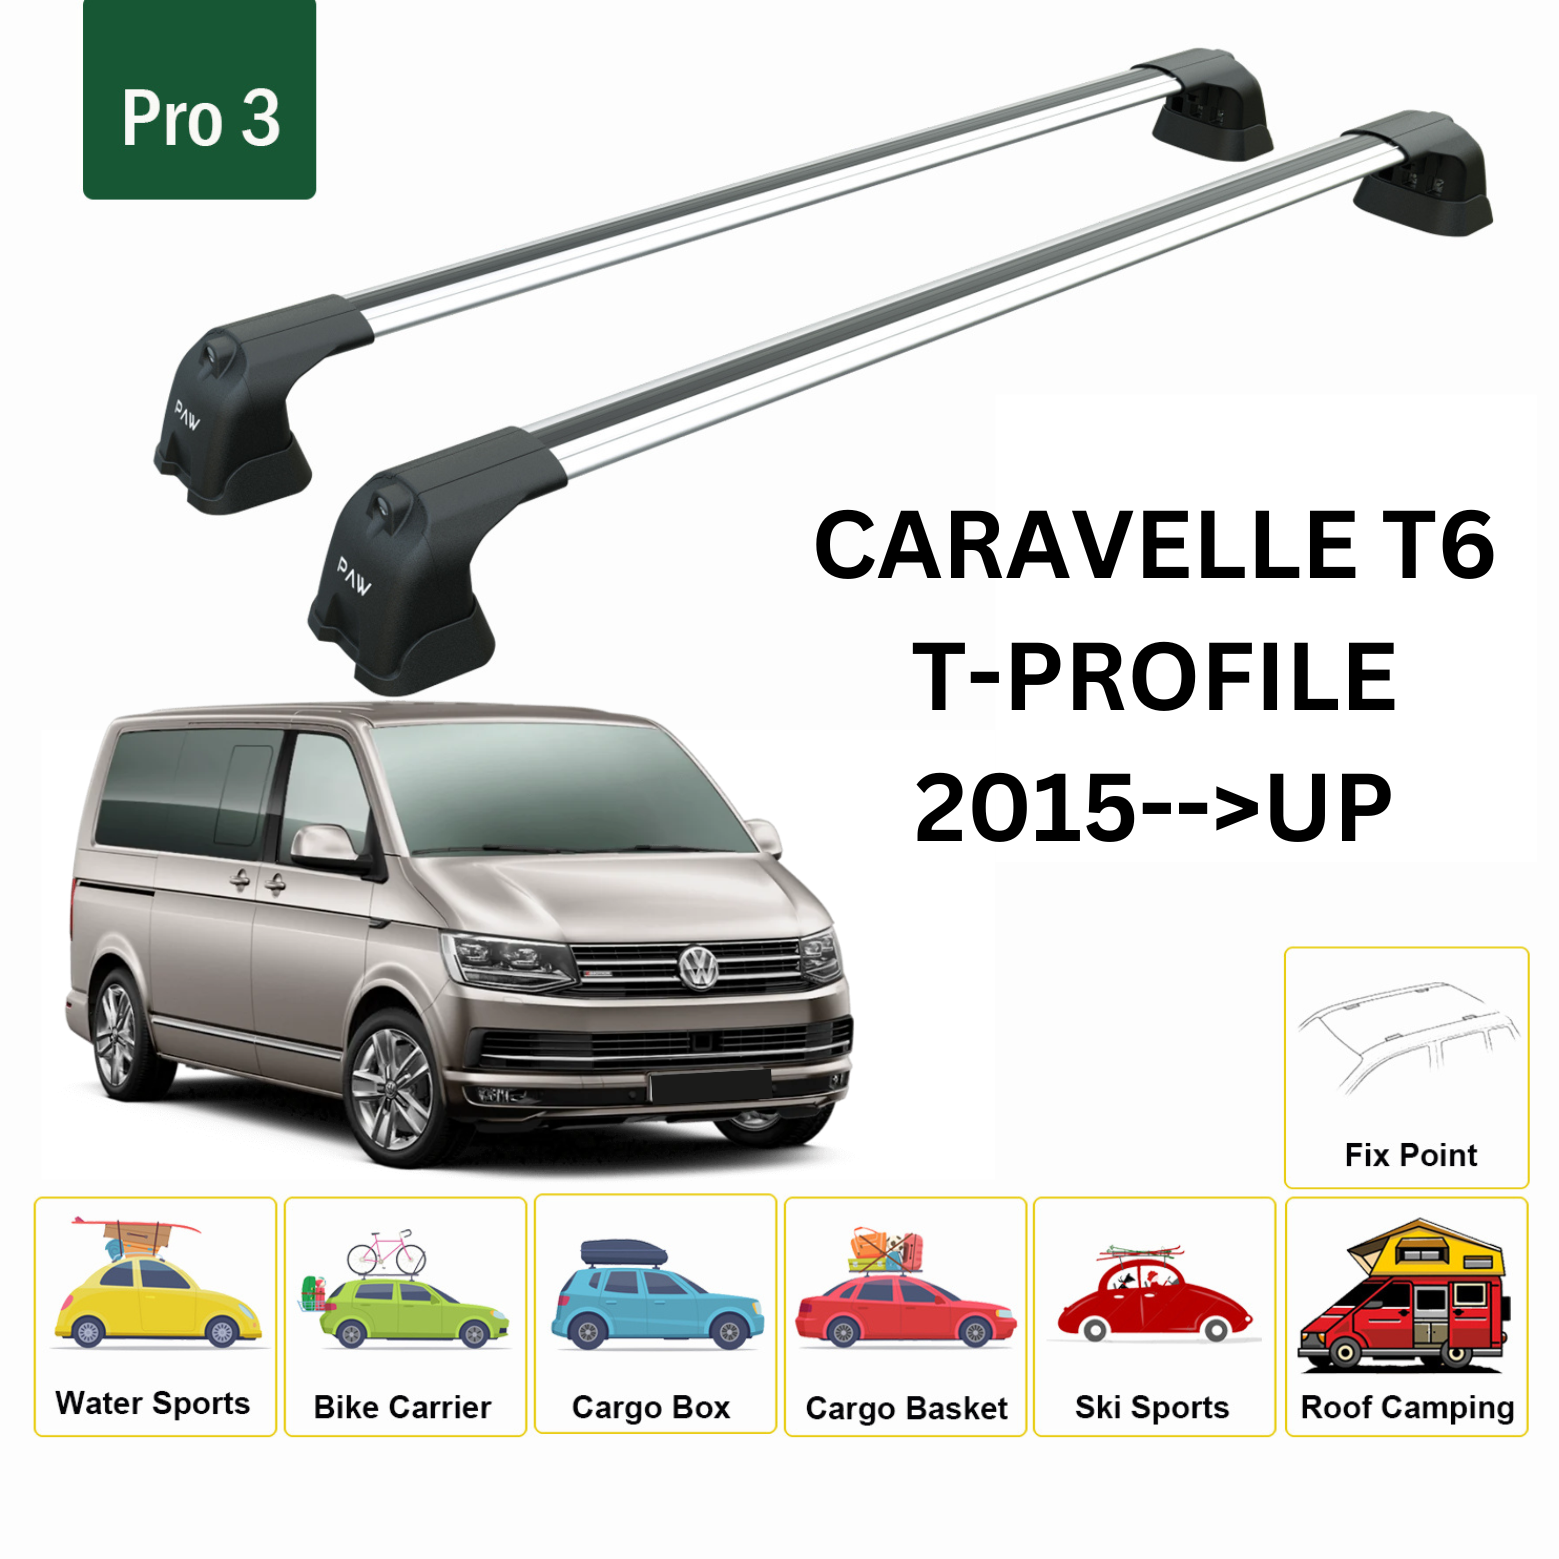 Caravelle T6 T-Profile 2015- Up  Tavan Ara Atkısı Tavan Sistemleri Paw Pro 3 Gri-2